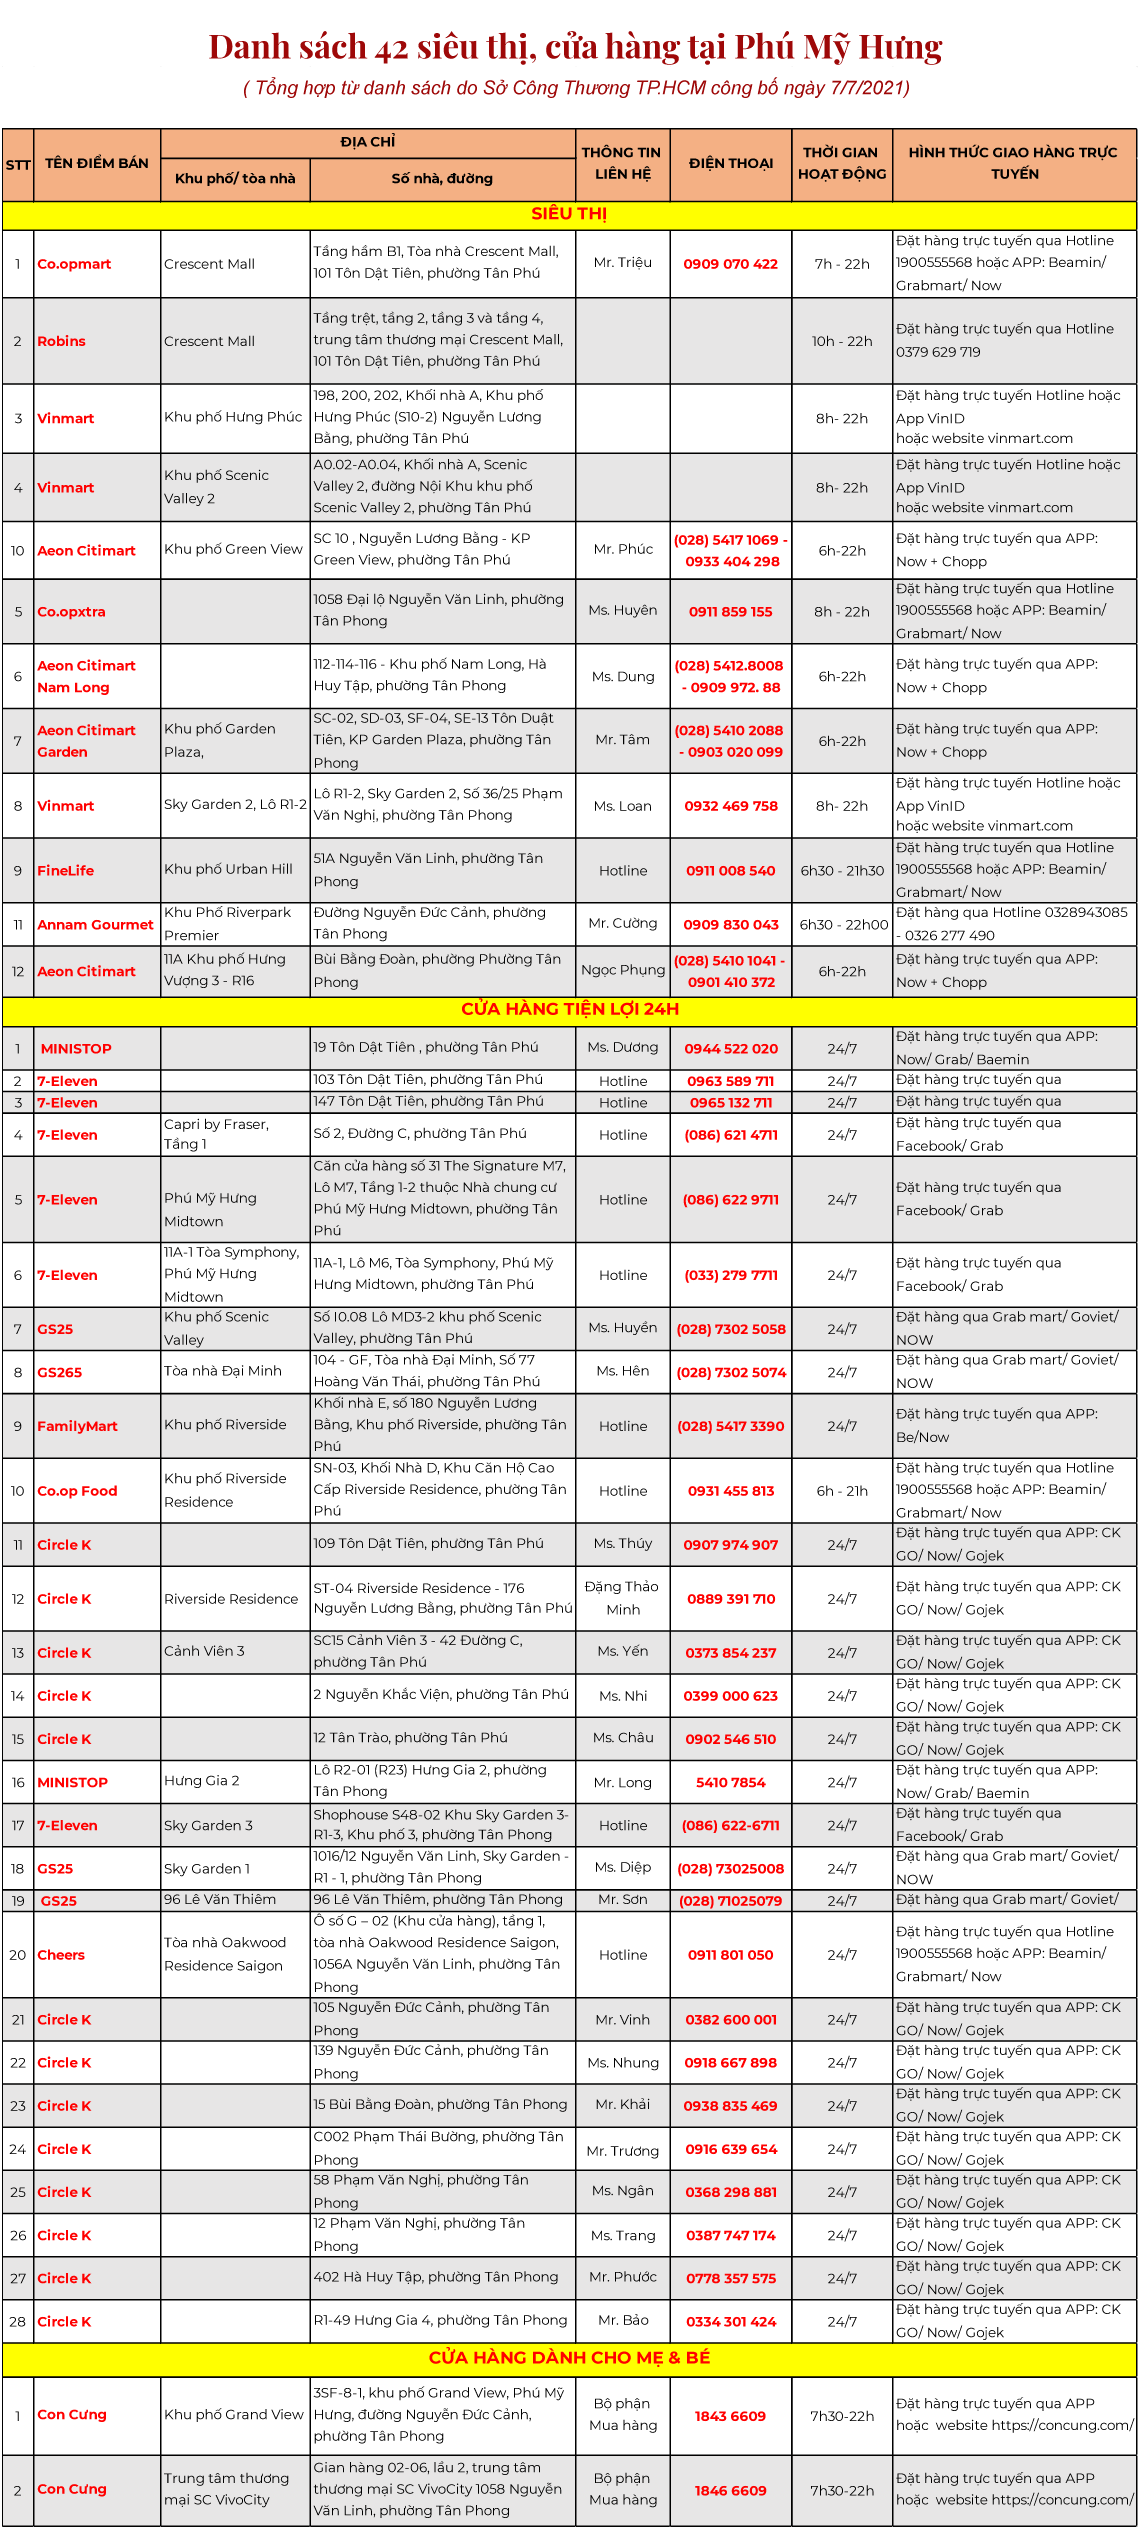 Danh sách các điểm bán mặt hàng thiết yếu tại Phú Mỹ Hưng